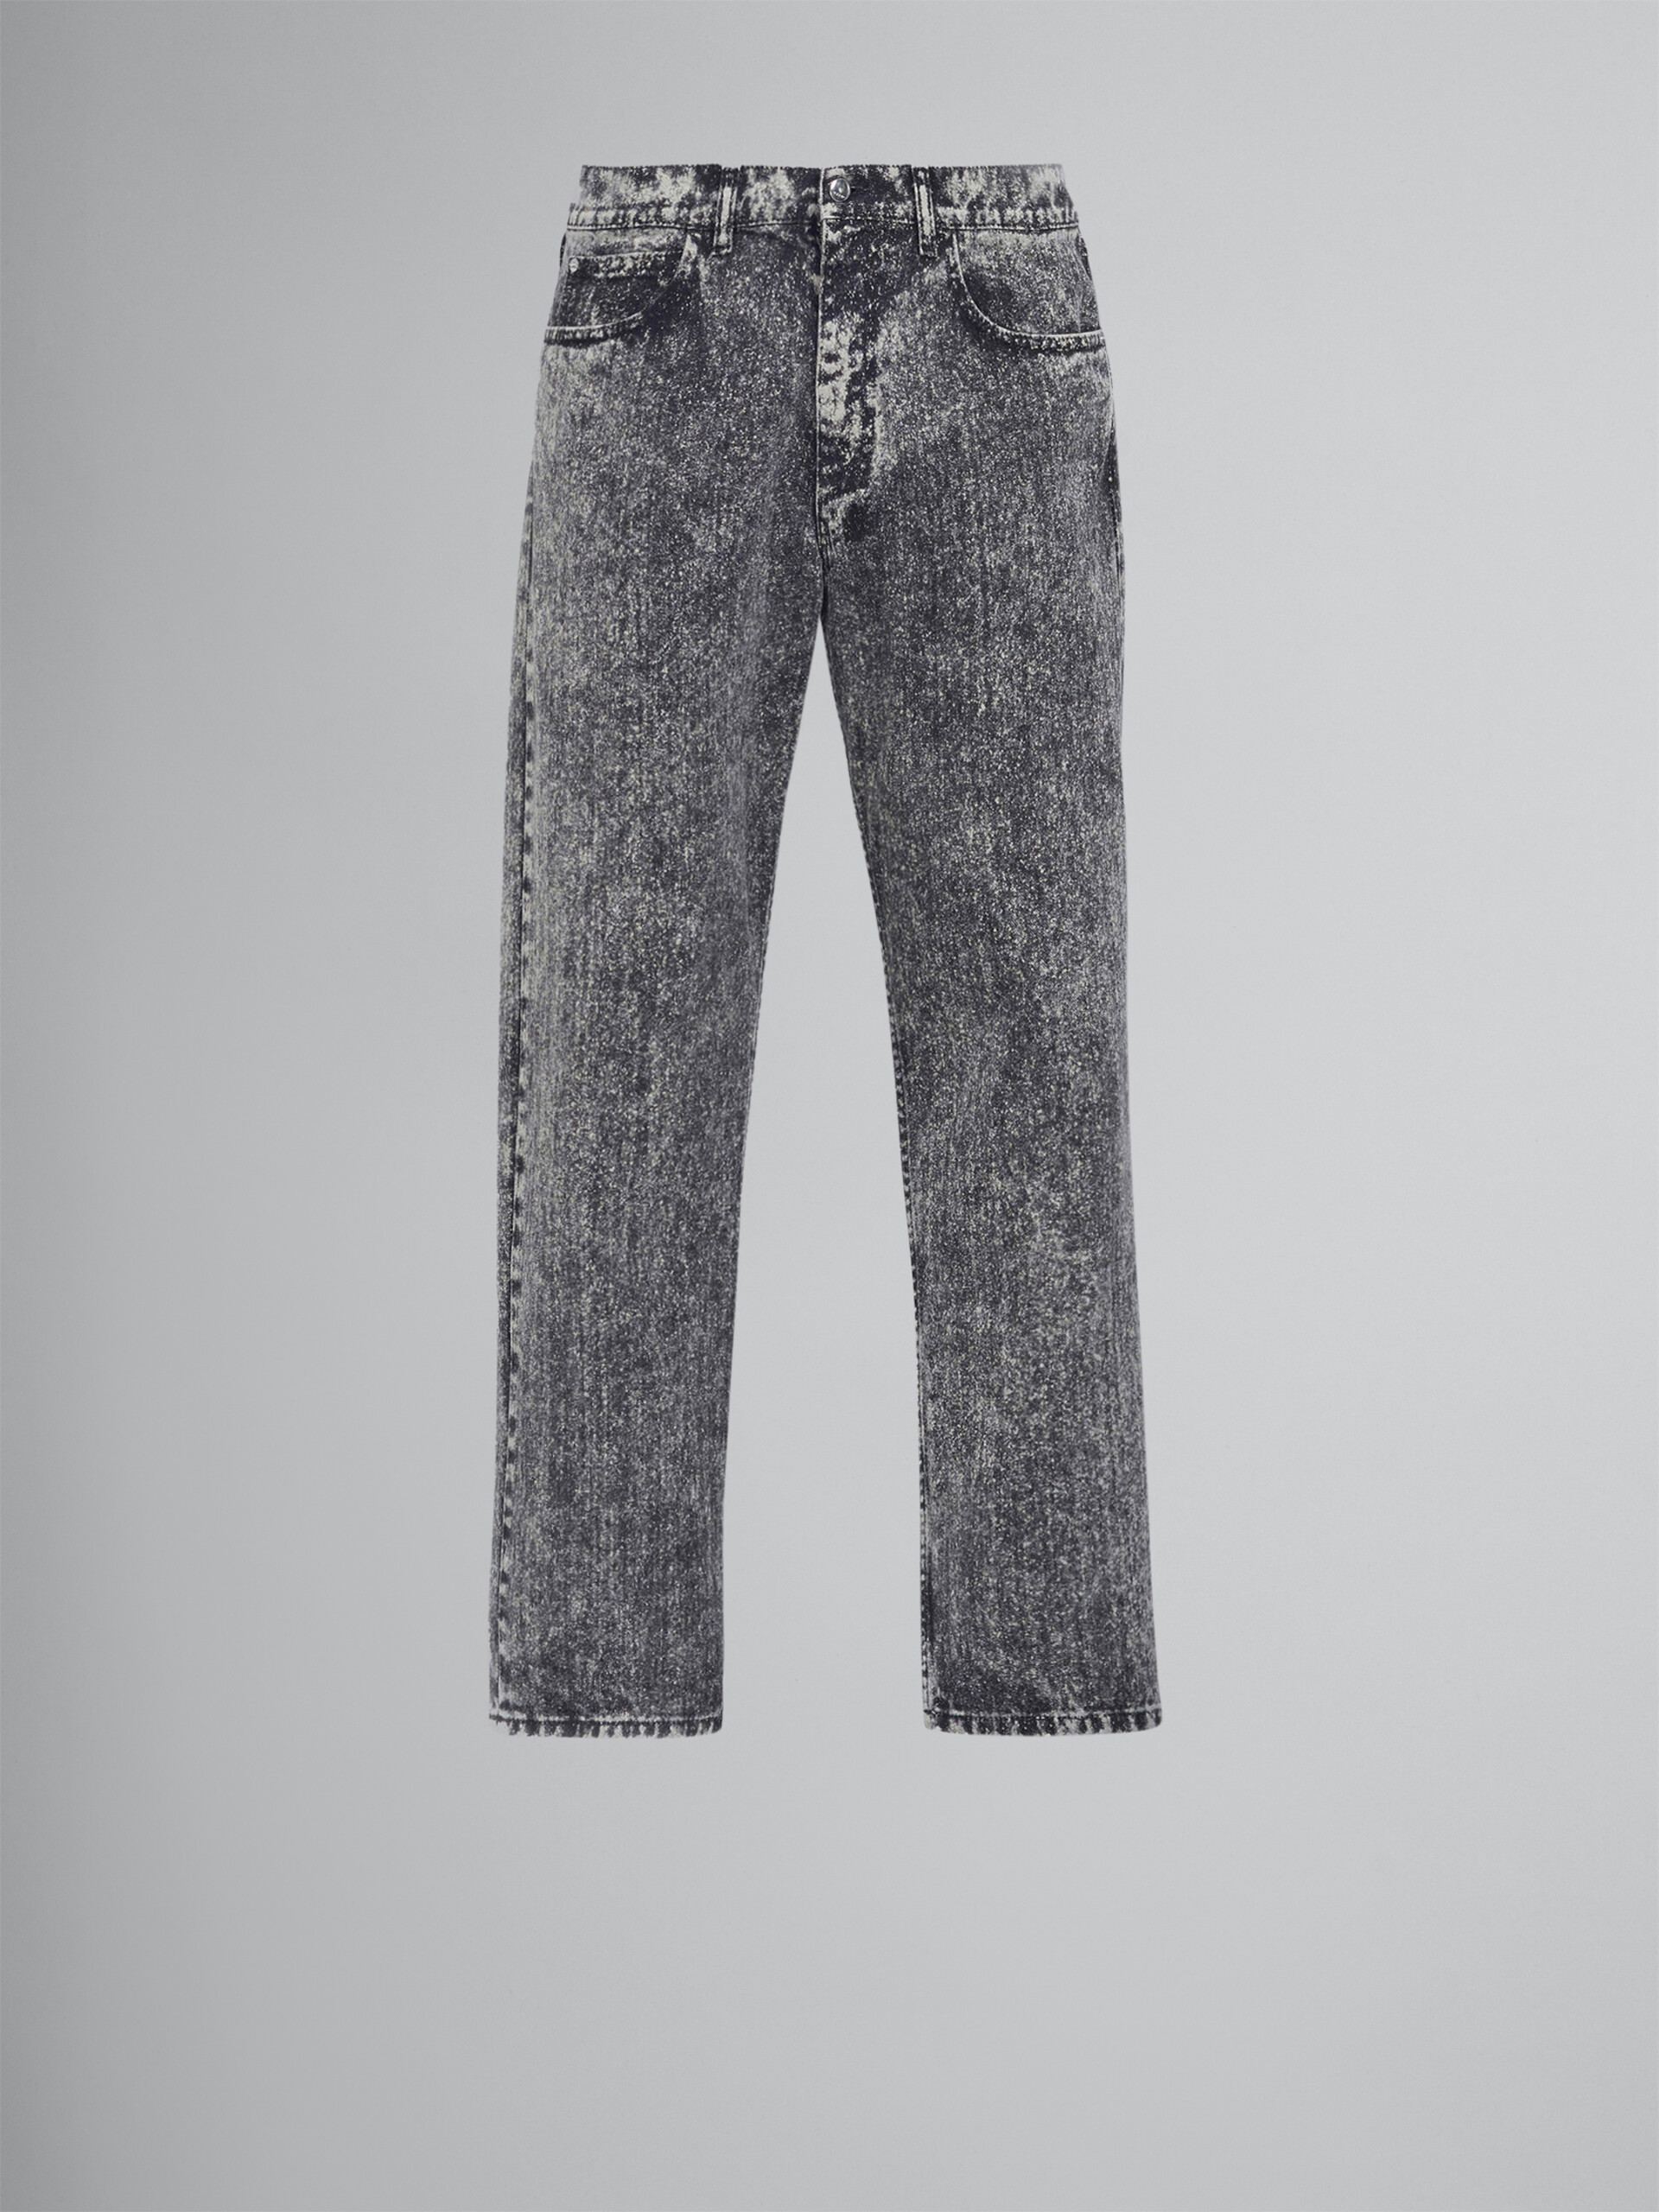 Schwarze Jeans - Hosen - Image 1